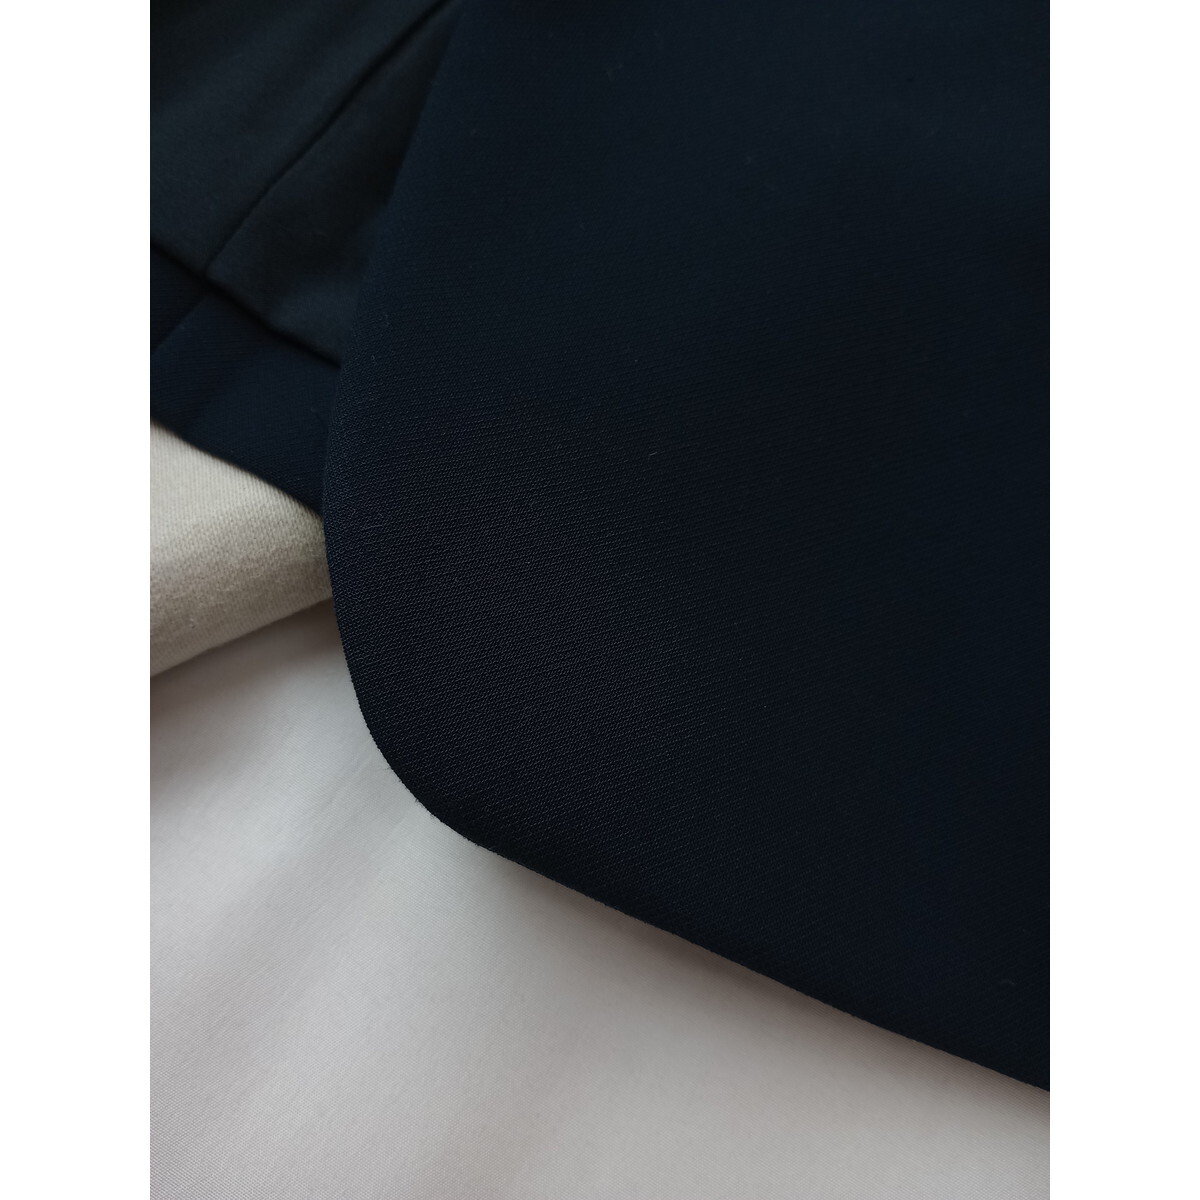 INDIVI インディヴィ「賢い女性は美しい」ノーカラー ジャケット 羽織り ネイビー 紺色 日本製 (65K+9052)☆_画像3